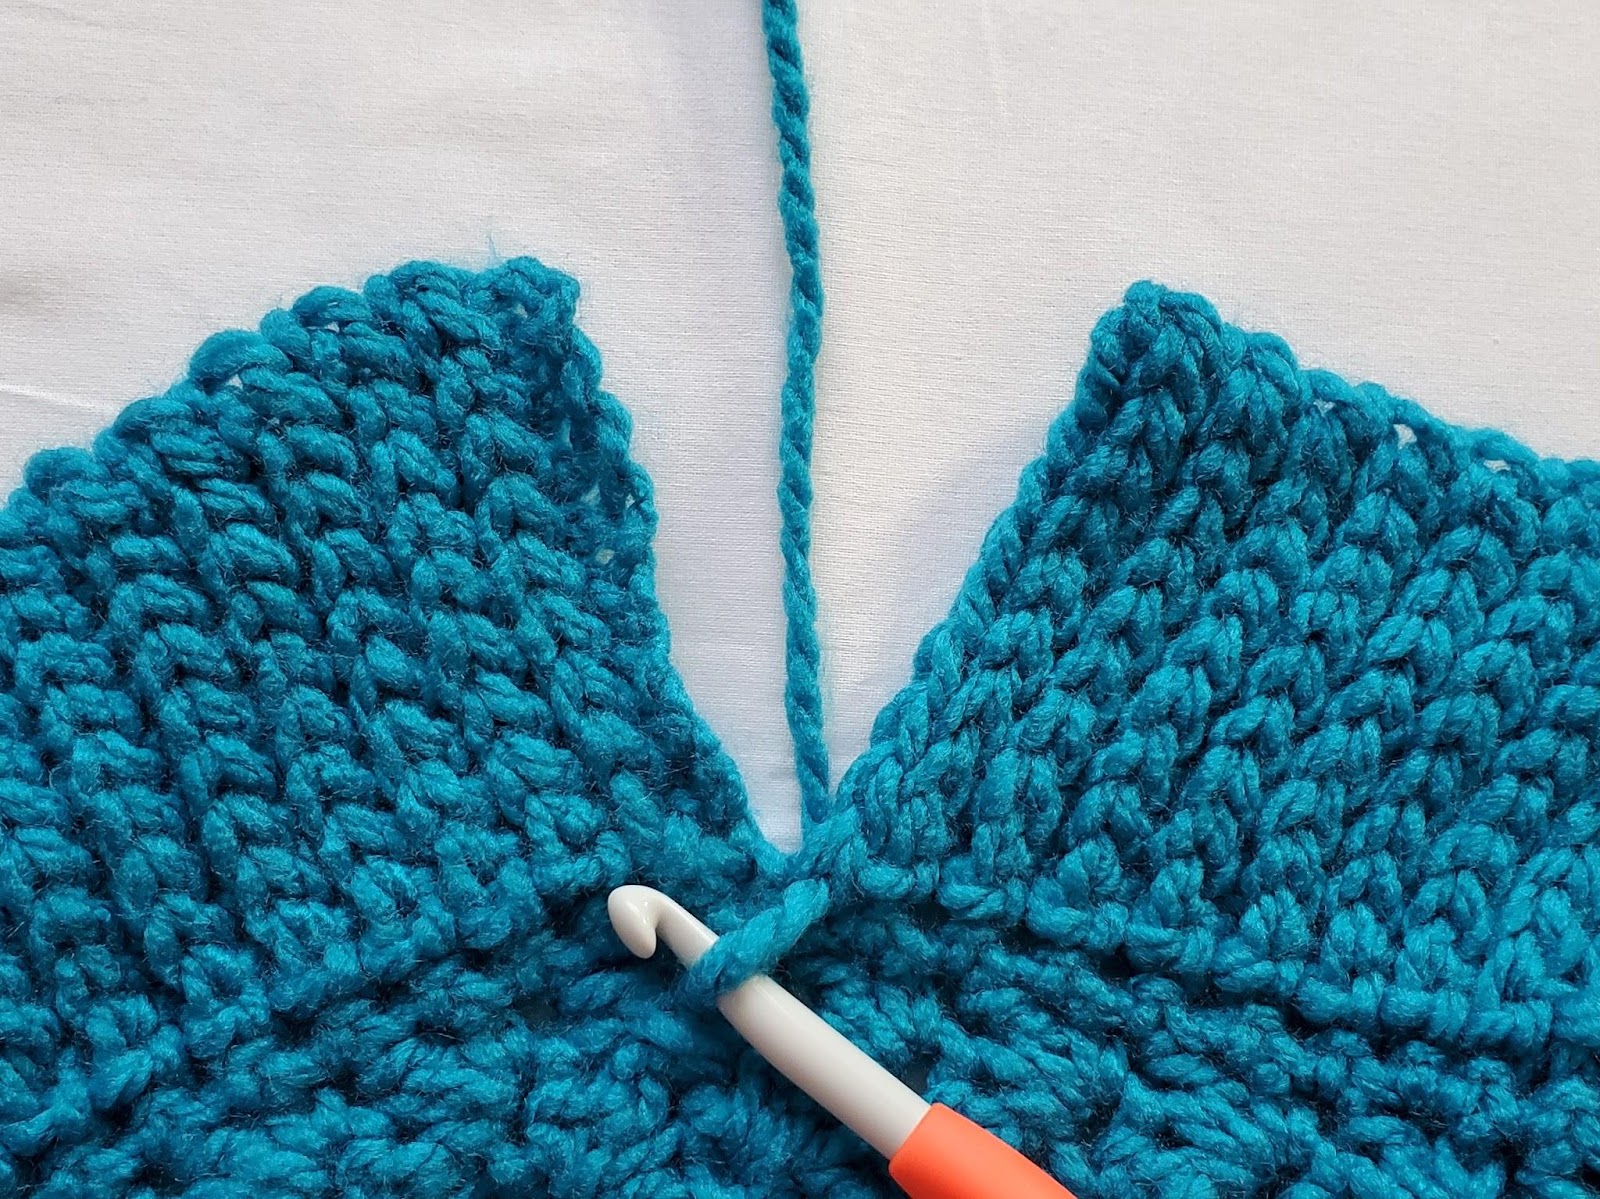 The Dead of Winter Capelet - Free Crochet Pattern